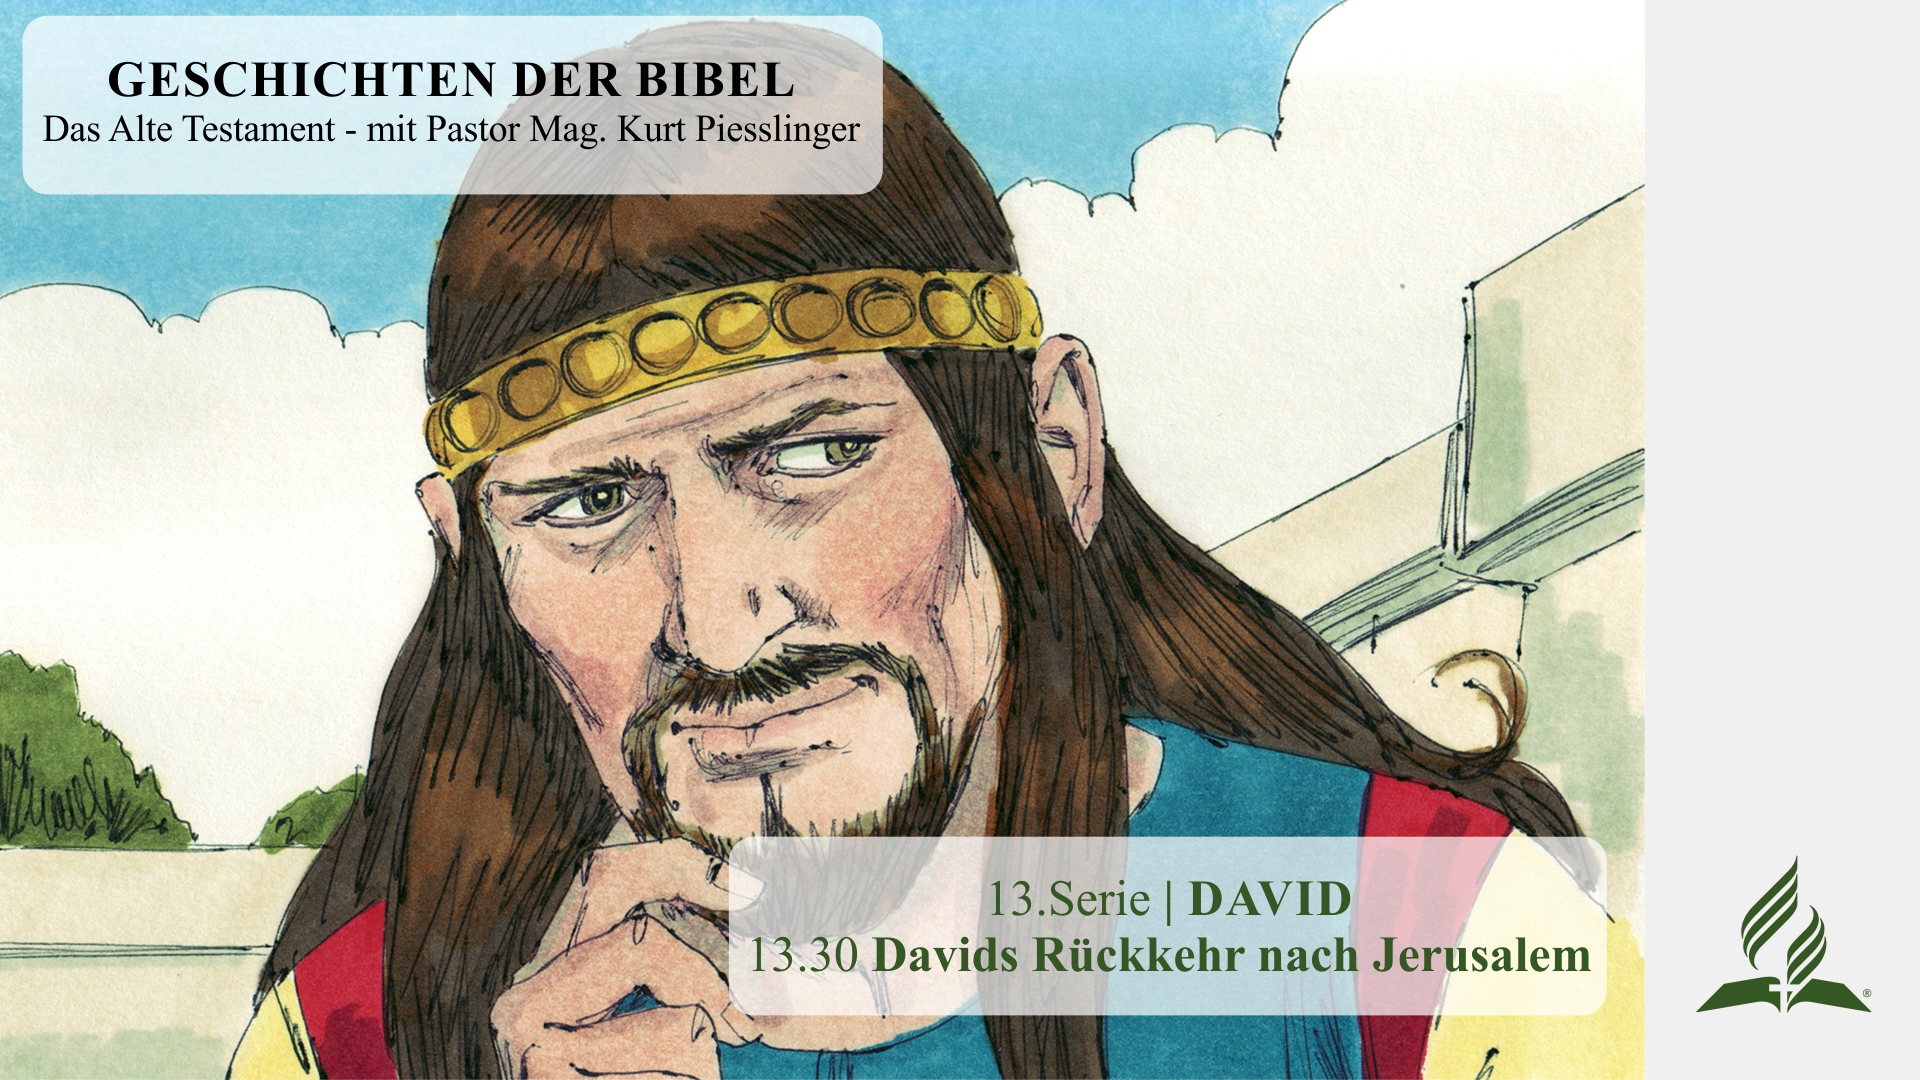 GESCHICHTEN DER BIBEL: 13.30 Davids Rückkehr nach Jerusalem – 13.DAVID | Pastor Mag.Kurt Piesslinger